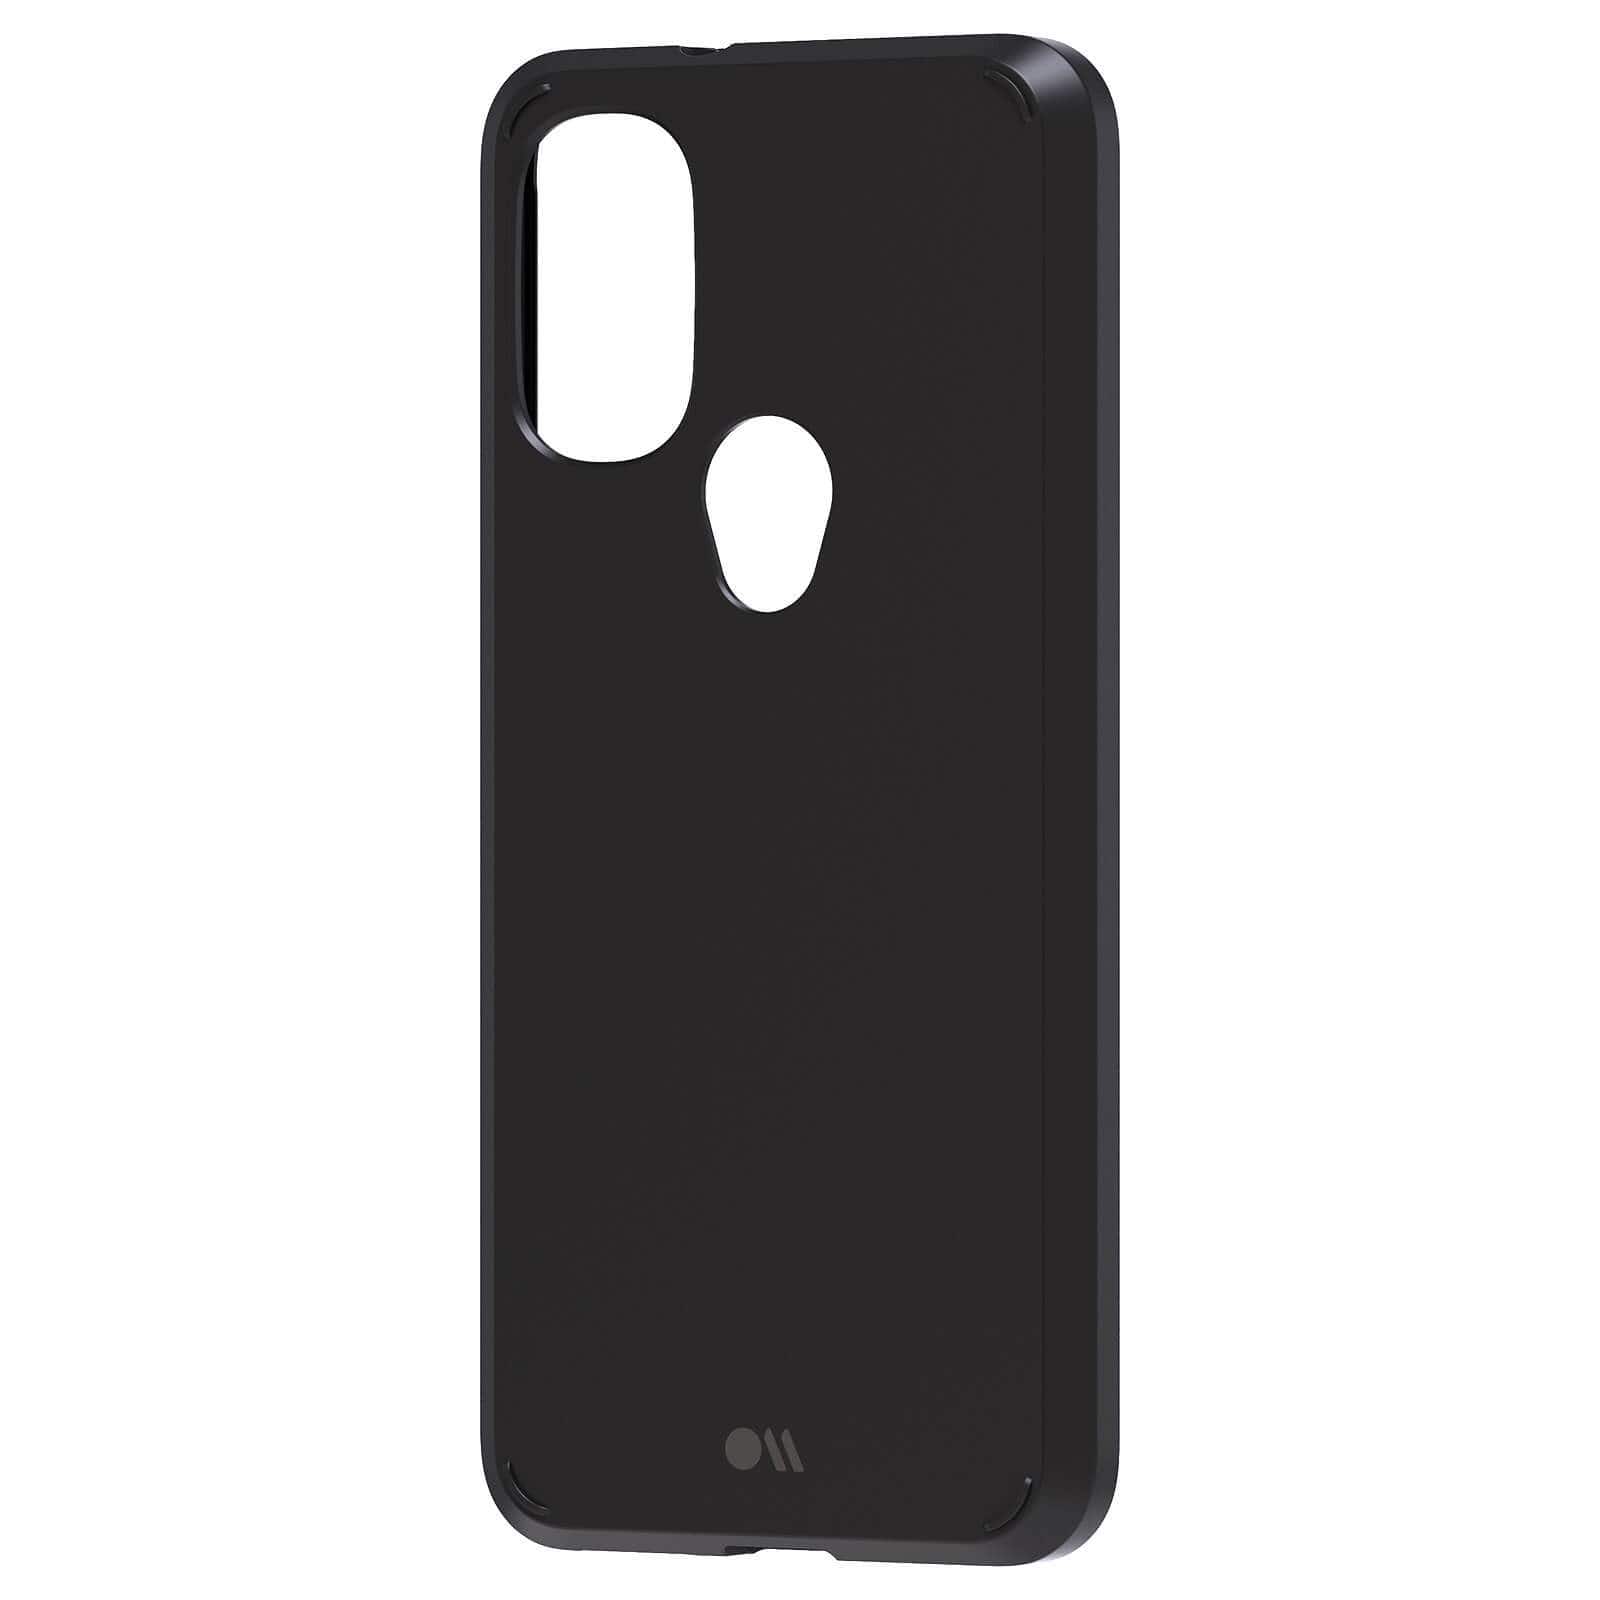 Tough Black phone case for Moto G Power 2022 color::Black